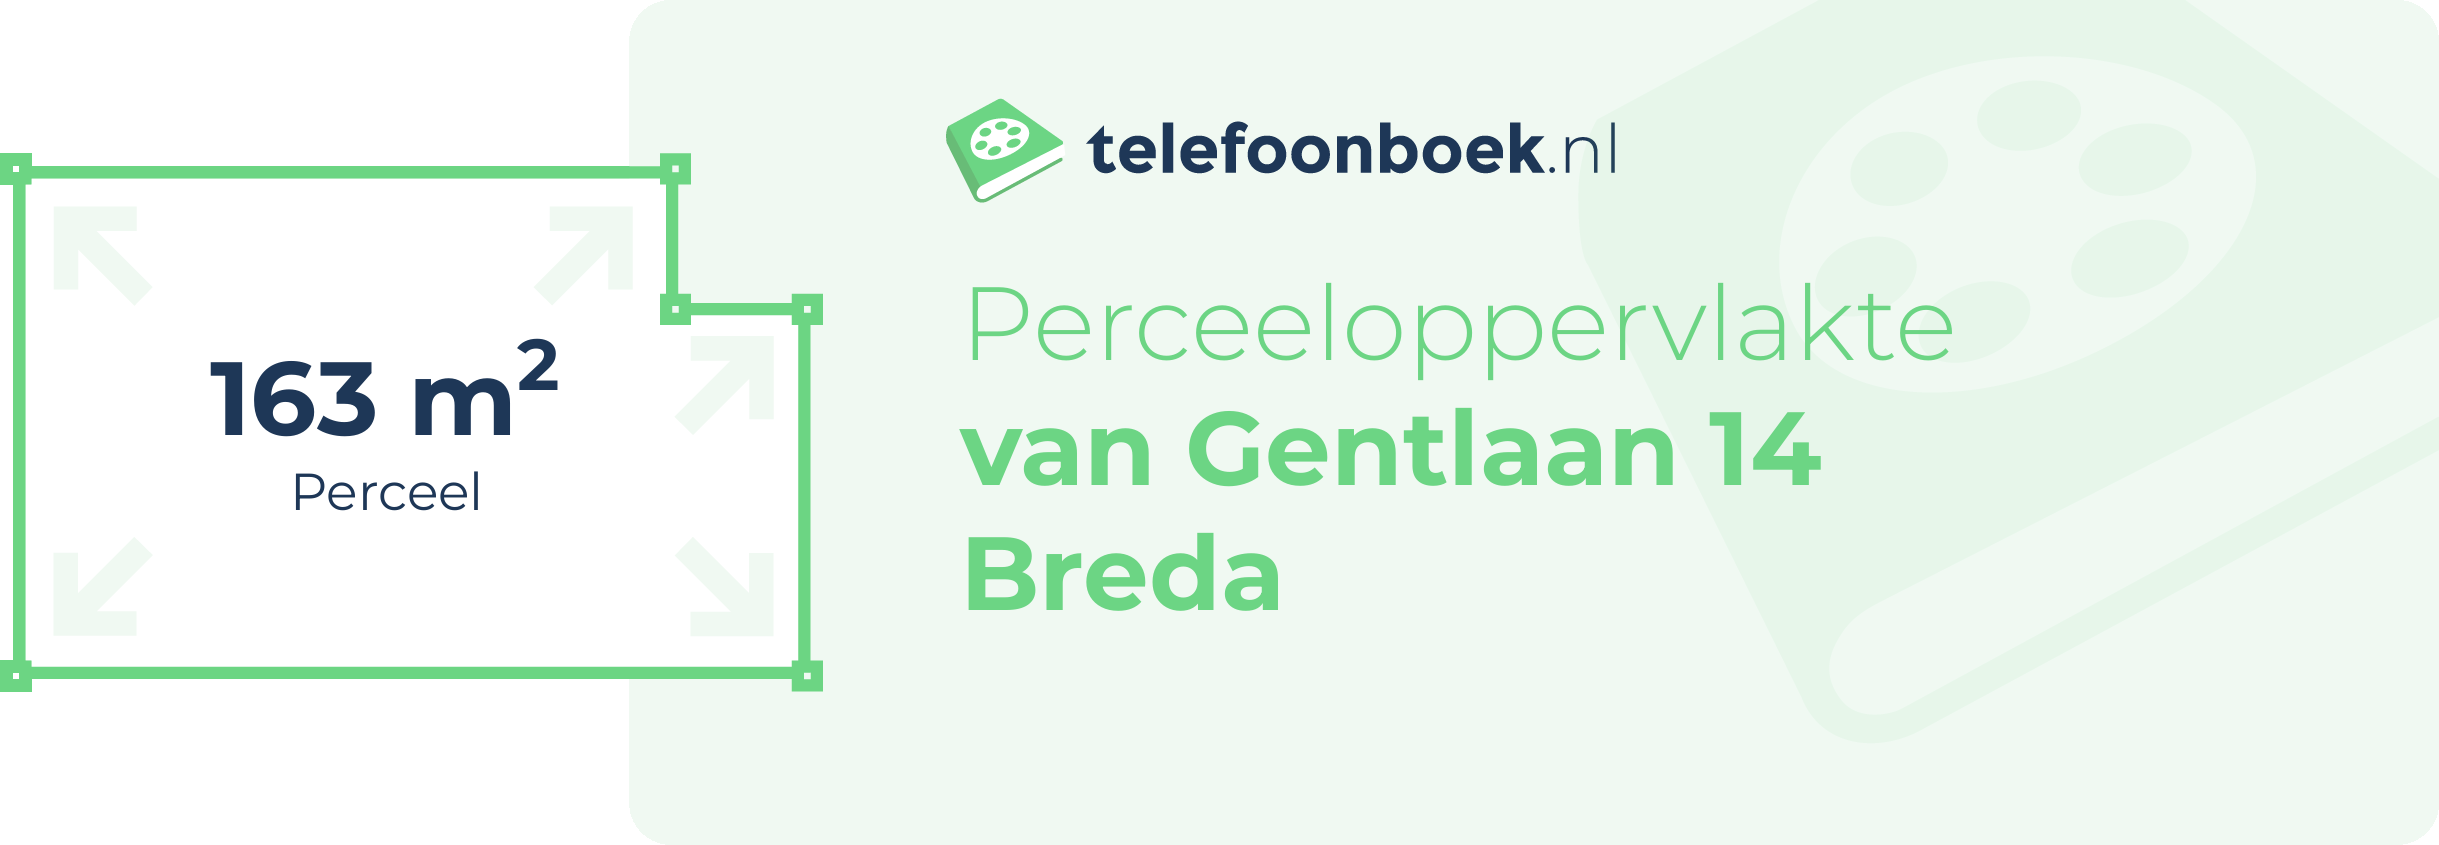 Perceeloppervlakte Van Gentlaan 14 Breda